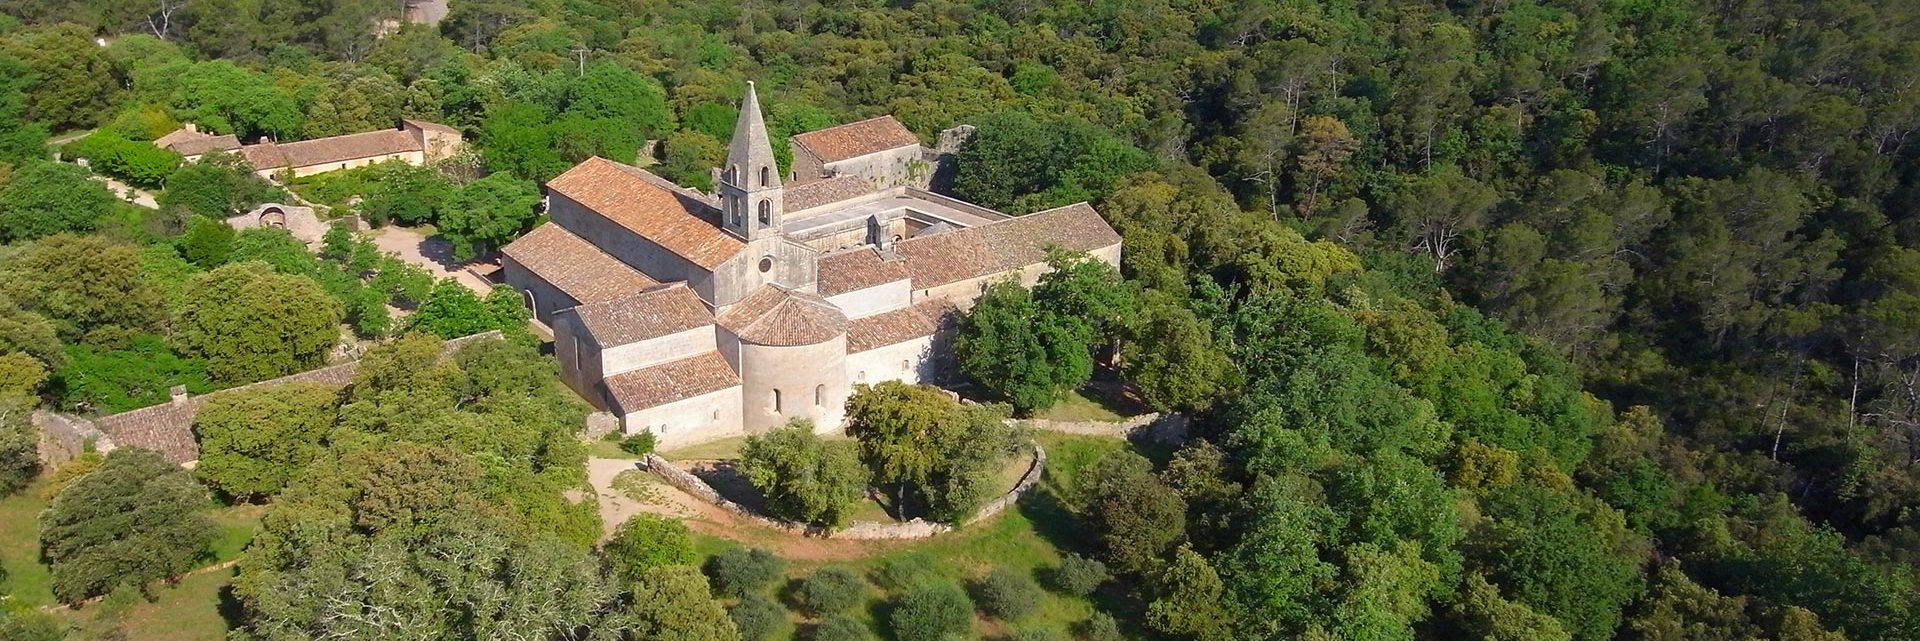 CAMPASUN - Abbaye du Thoronet